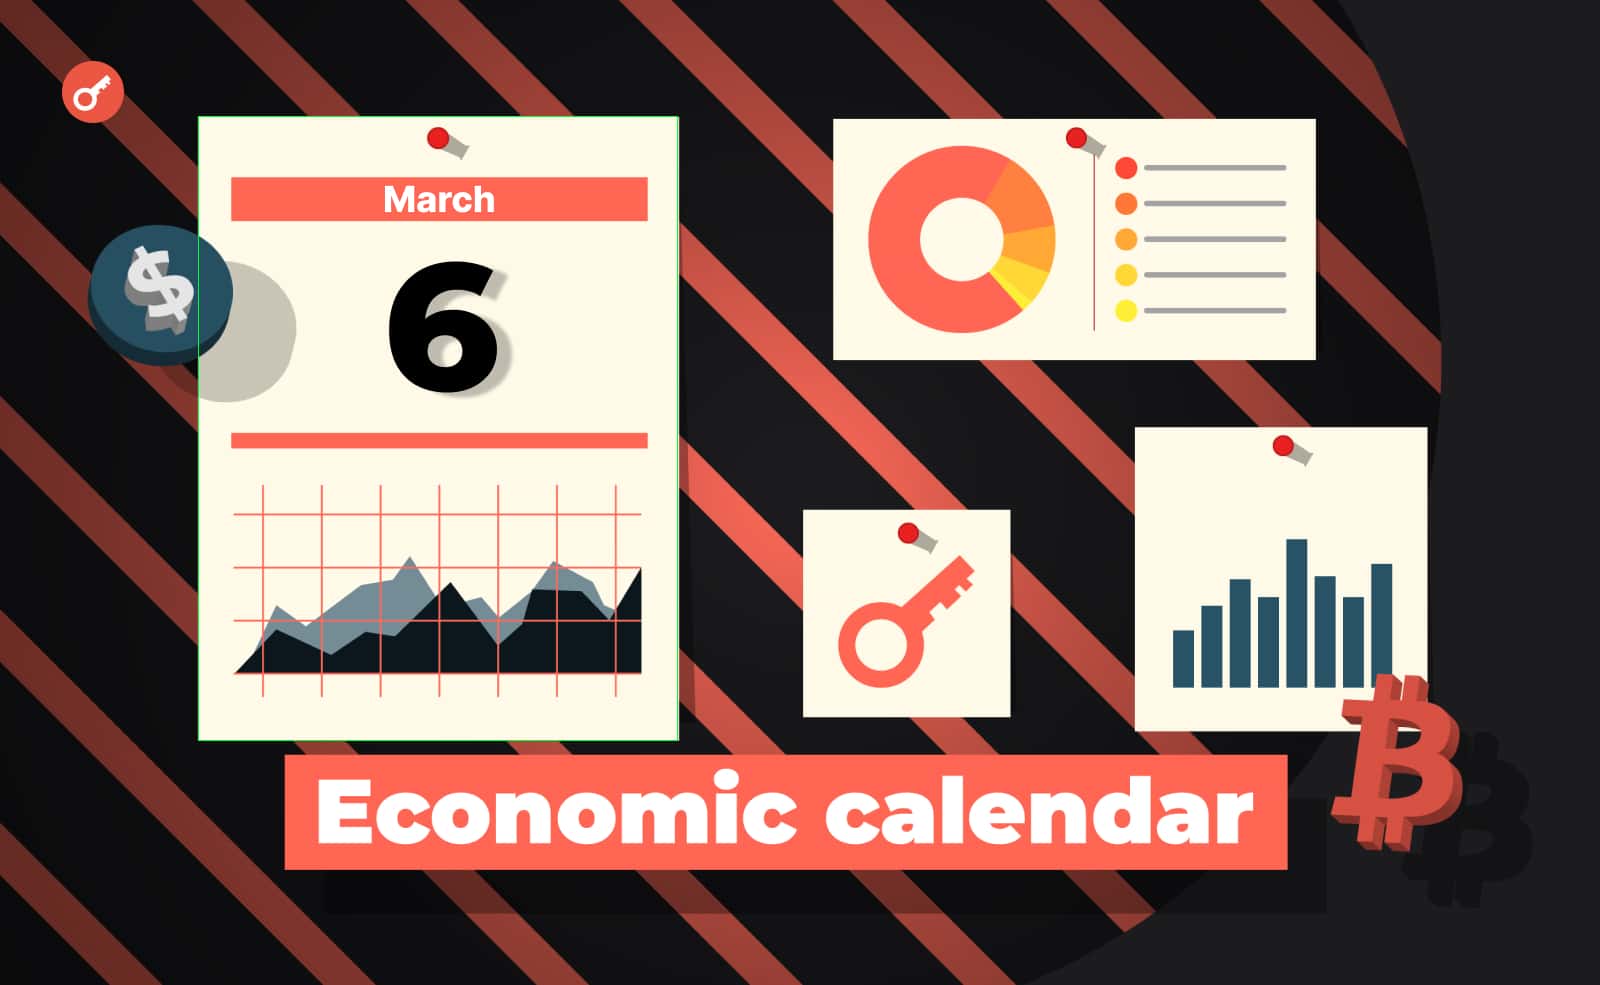 Економічний календар 6-10 березня: два виступи Пауелла, рішення центробанків і останні звіти перед рішенням ФРС. Головний колаж новини.